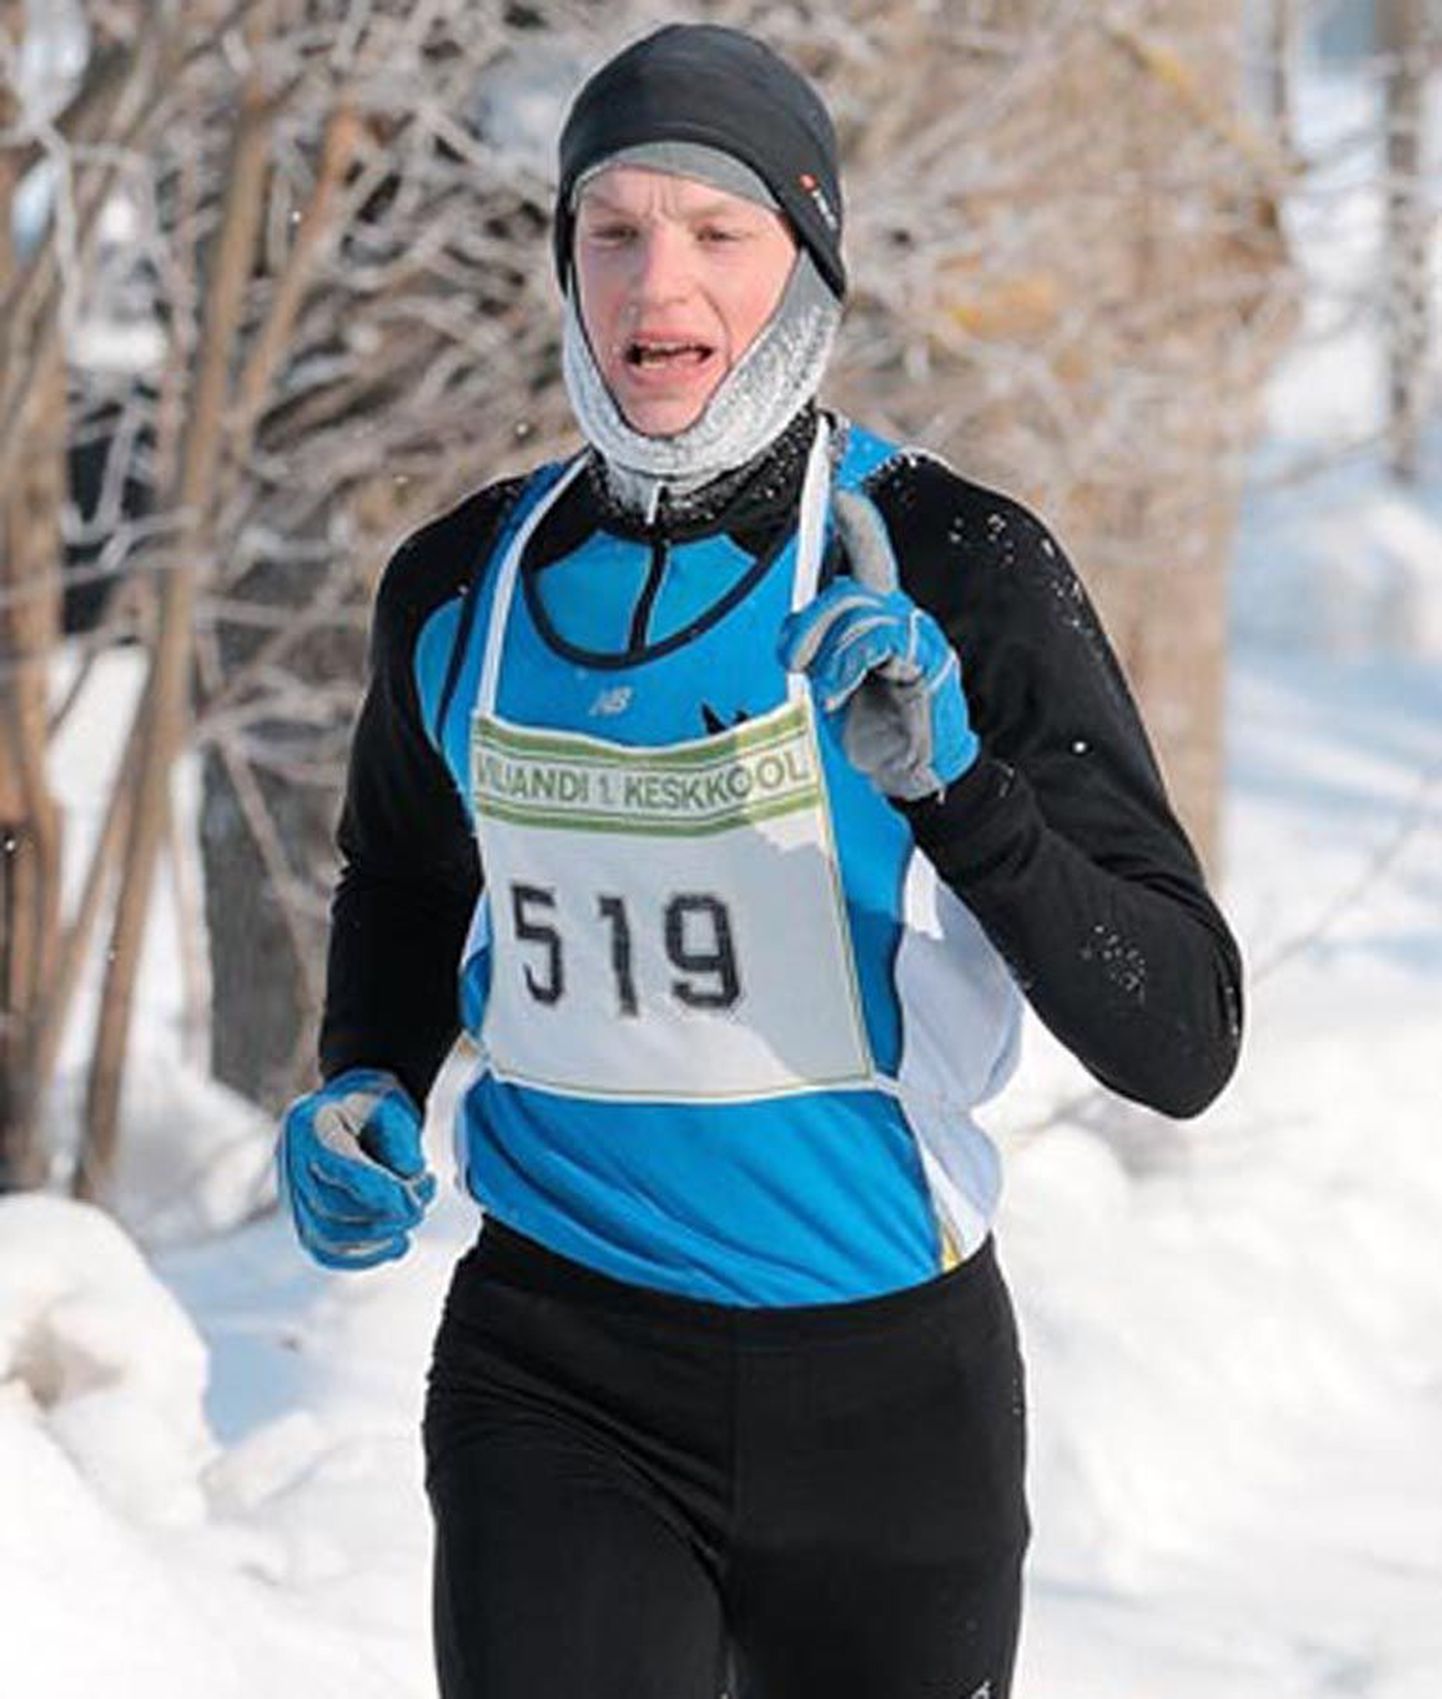 Külmas talveilmas peetud jooksu võitis Jaan Jänes.